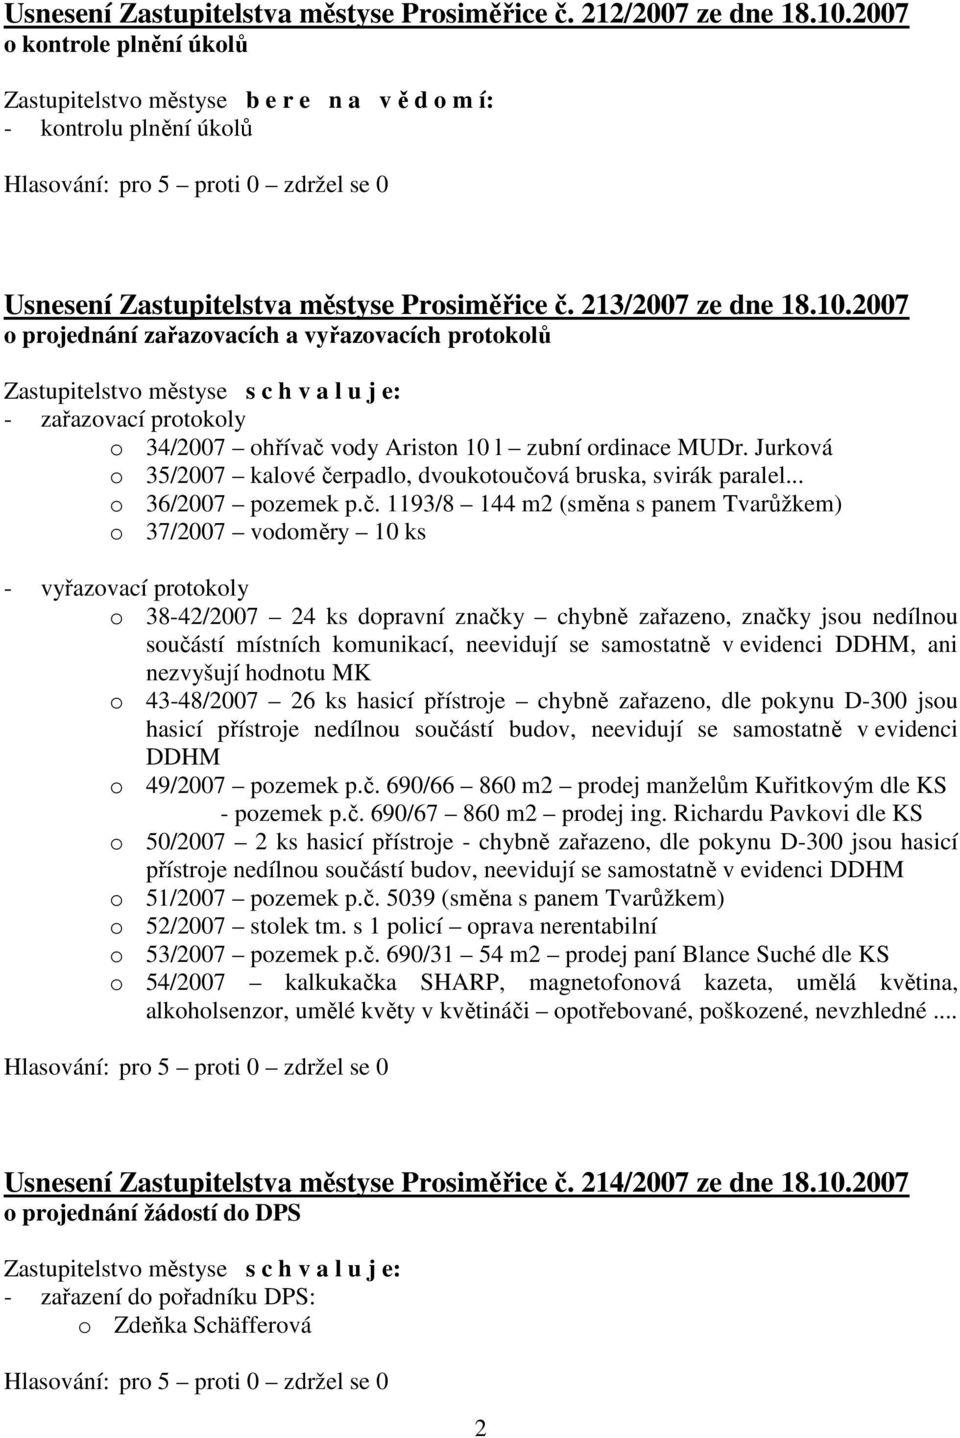 2007 o projednání zařazovacích a vyřazovacích protokolů - zařazovací protokoly o 34/2007 ohřívač vody Ariston 10 l zubní ordinace MUDr.